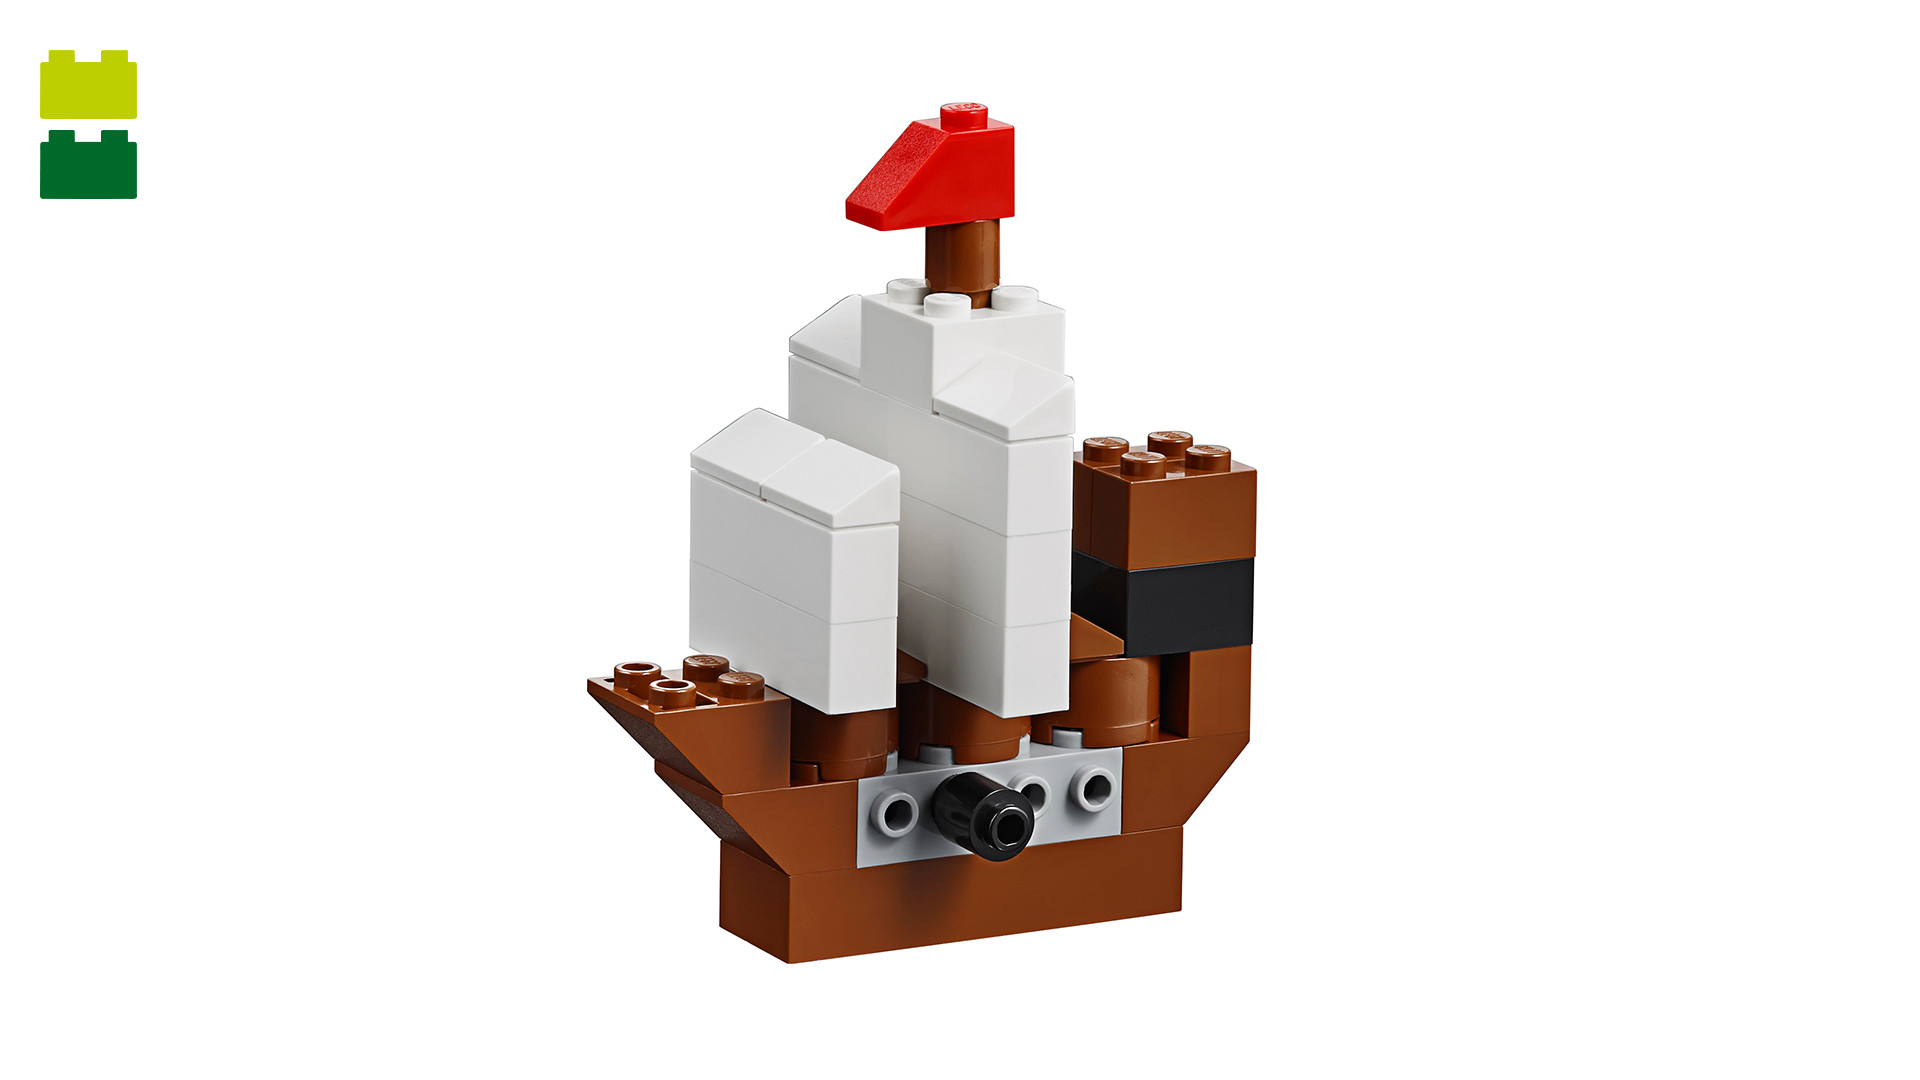 lego classic pirate ship